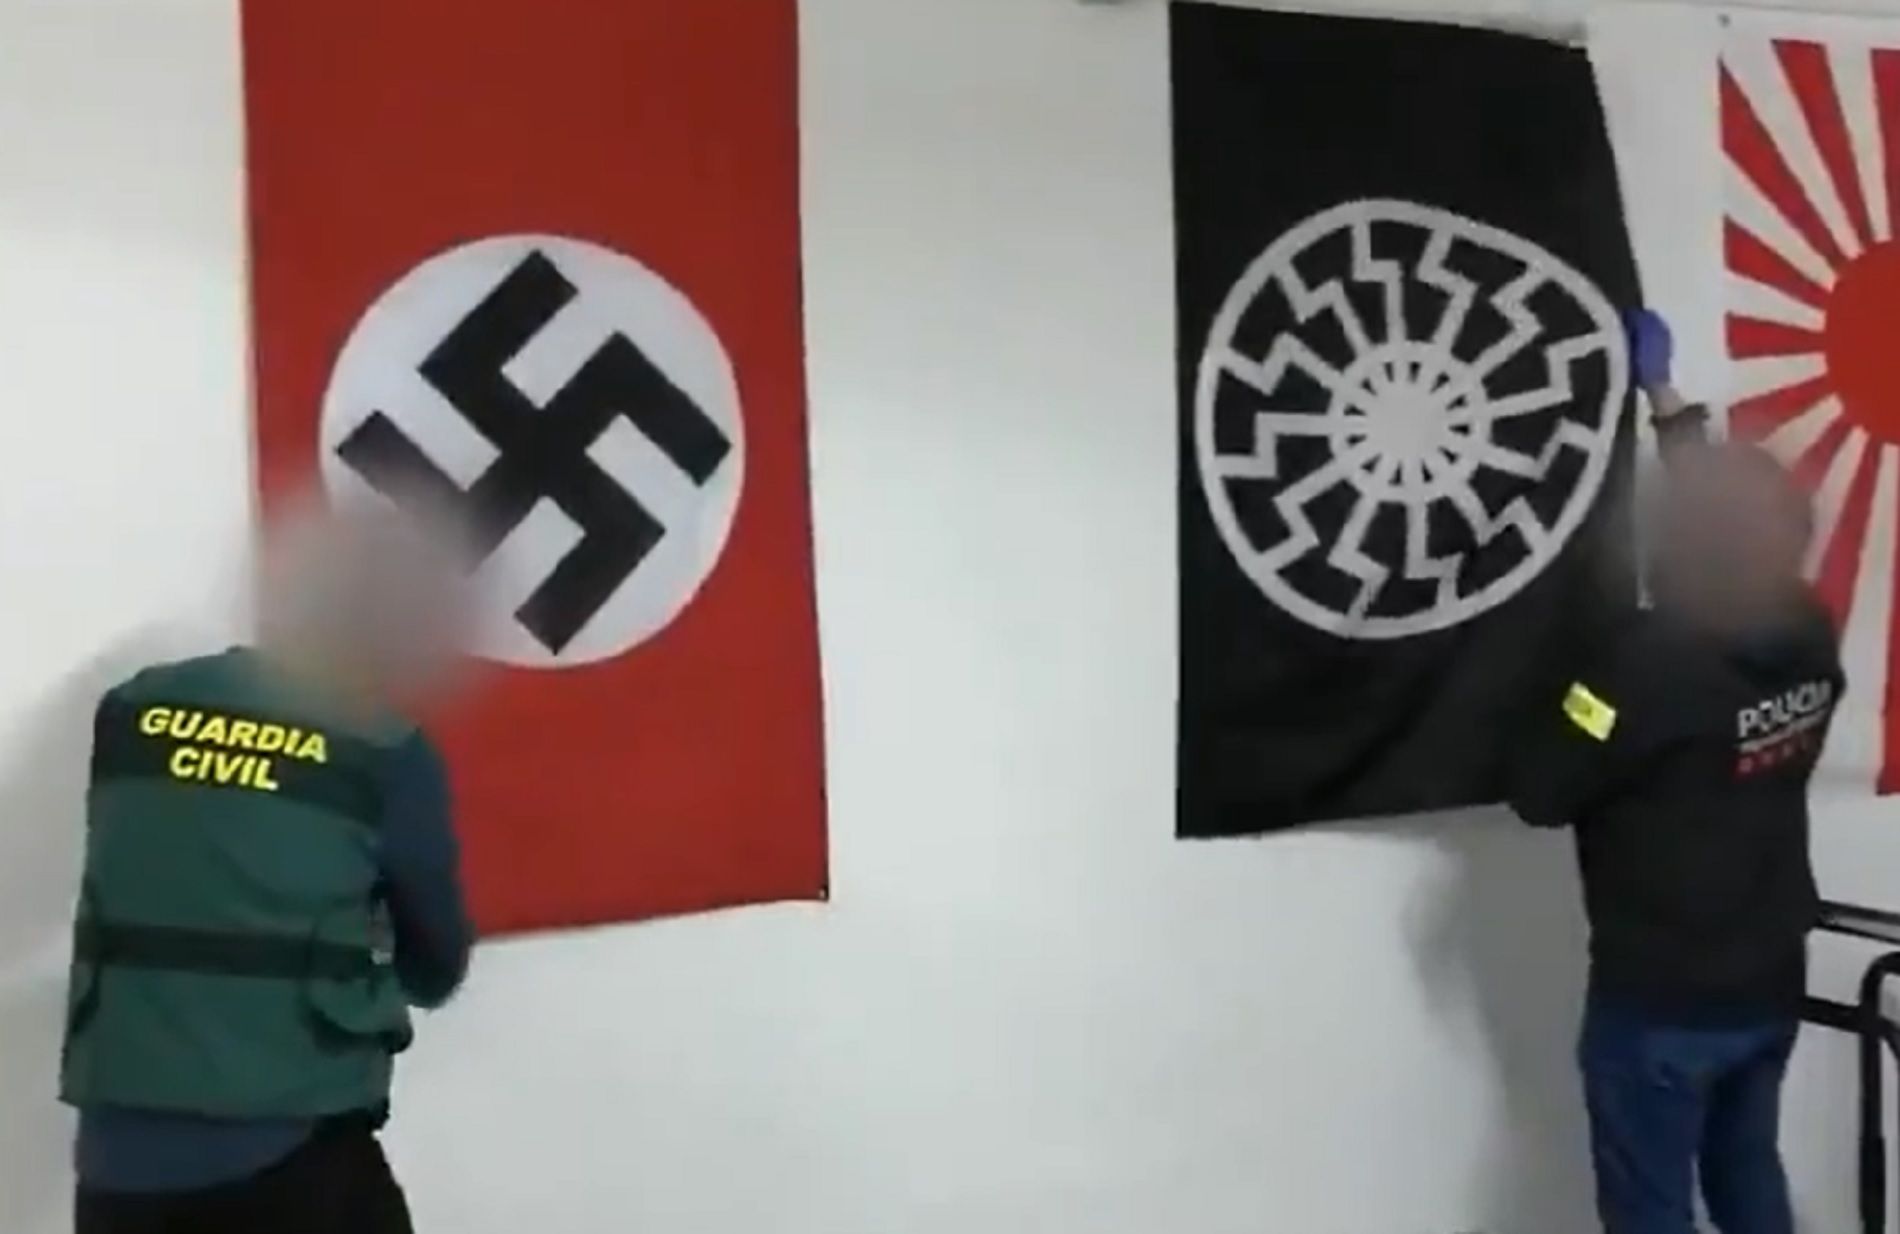 Banderas nazis / Mossos d'Esquadra